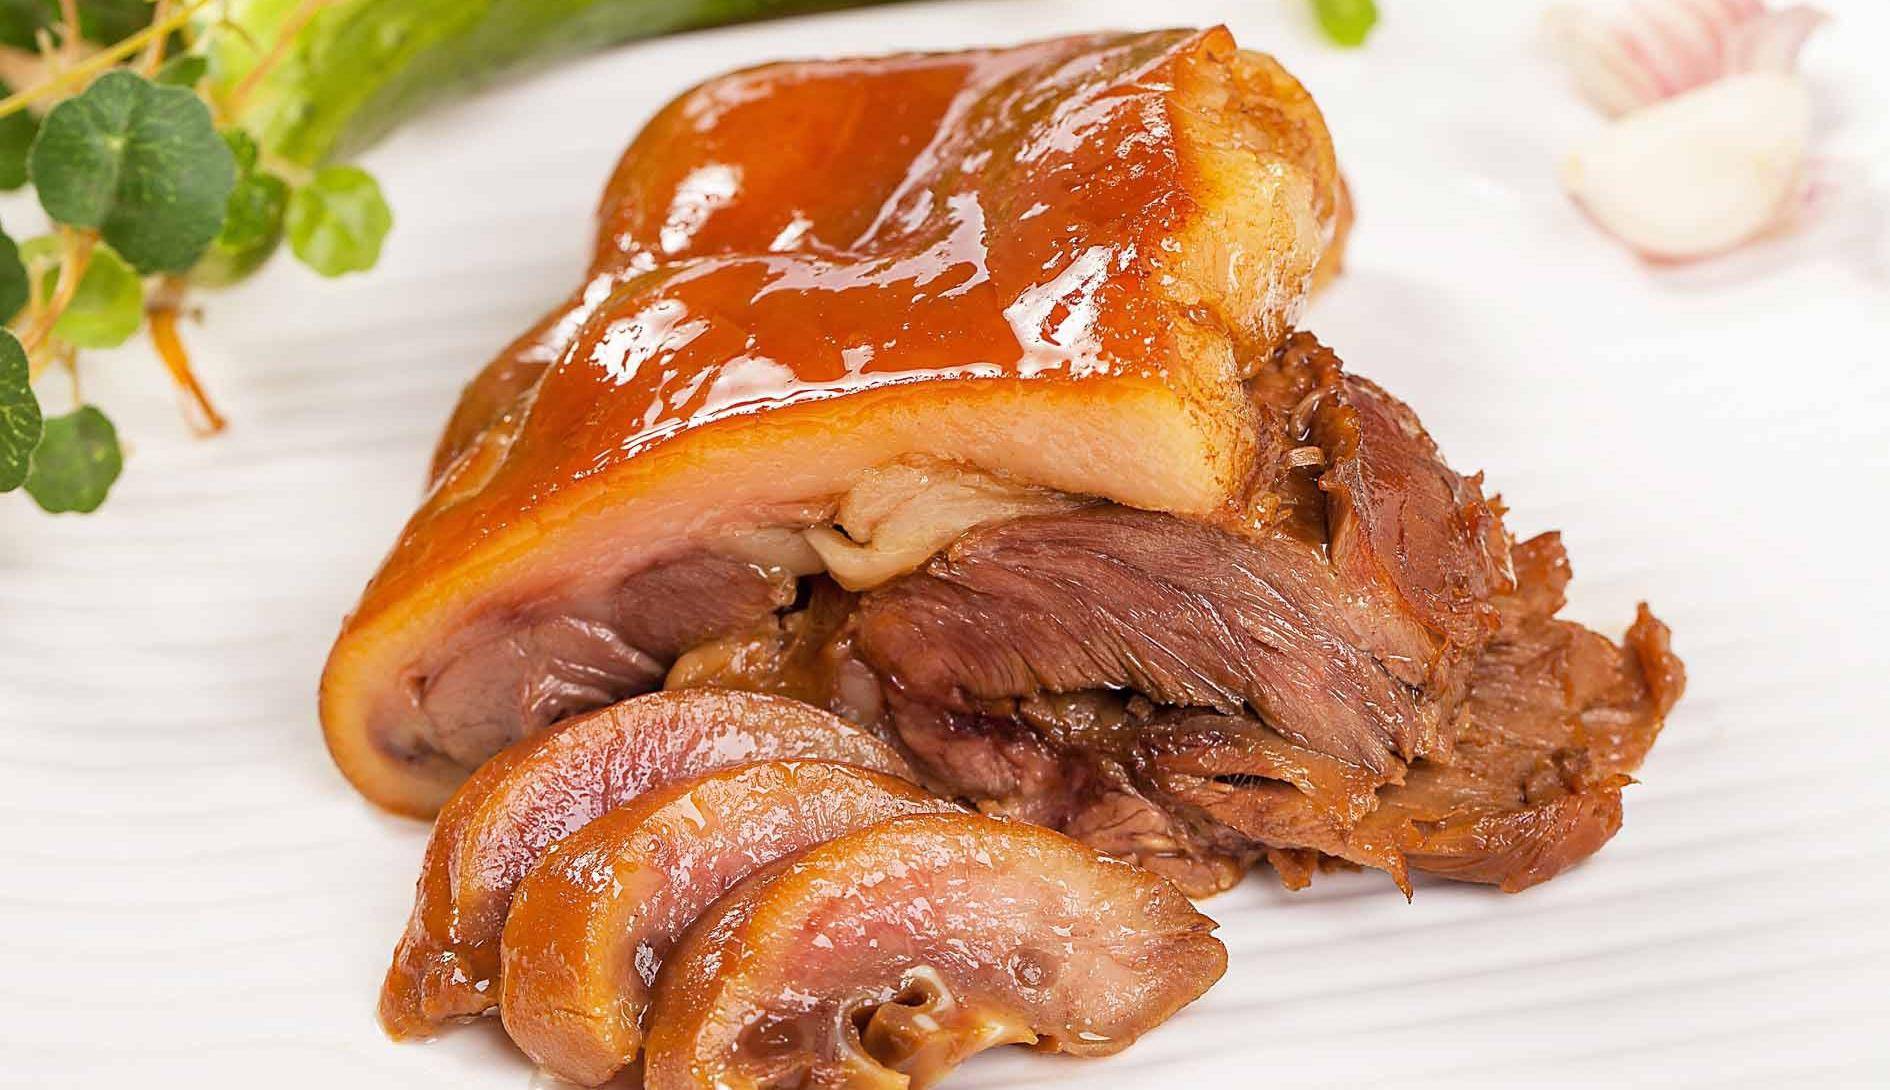 六合猪头肉,南京江北的一道名片!